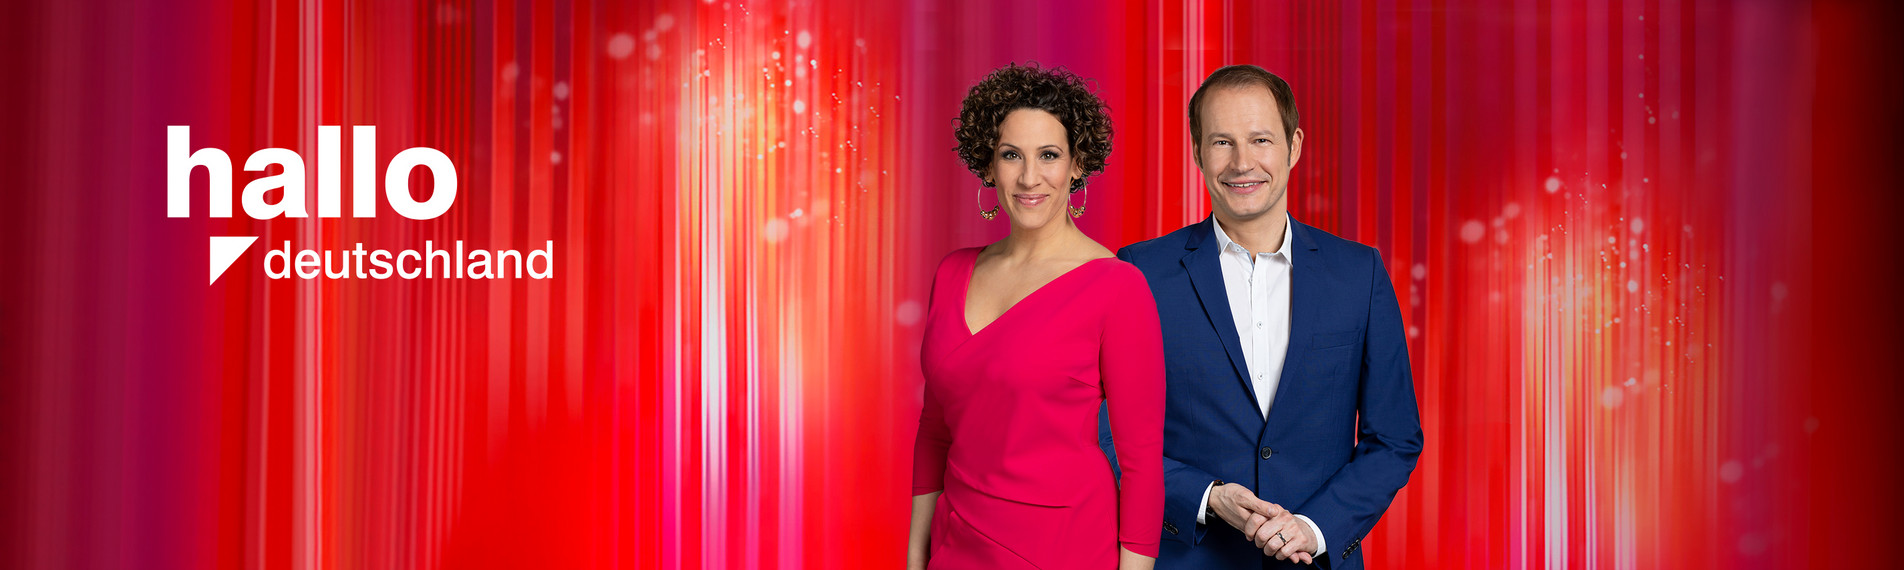 Lissy Ishag und Tim Niedernolte moderieren gemeinsam die Jubiläumssendung zu 25 Jahre "hallo deutschland". Foto: ZDF/Jana Kay